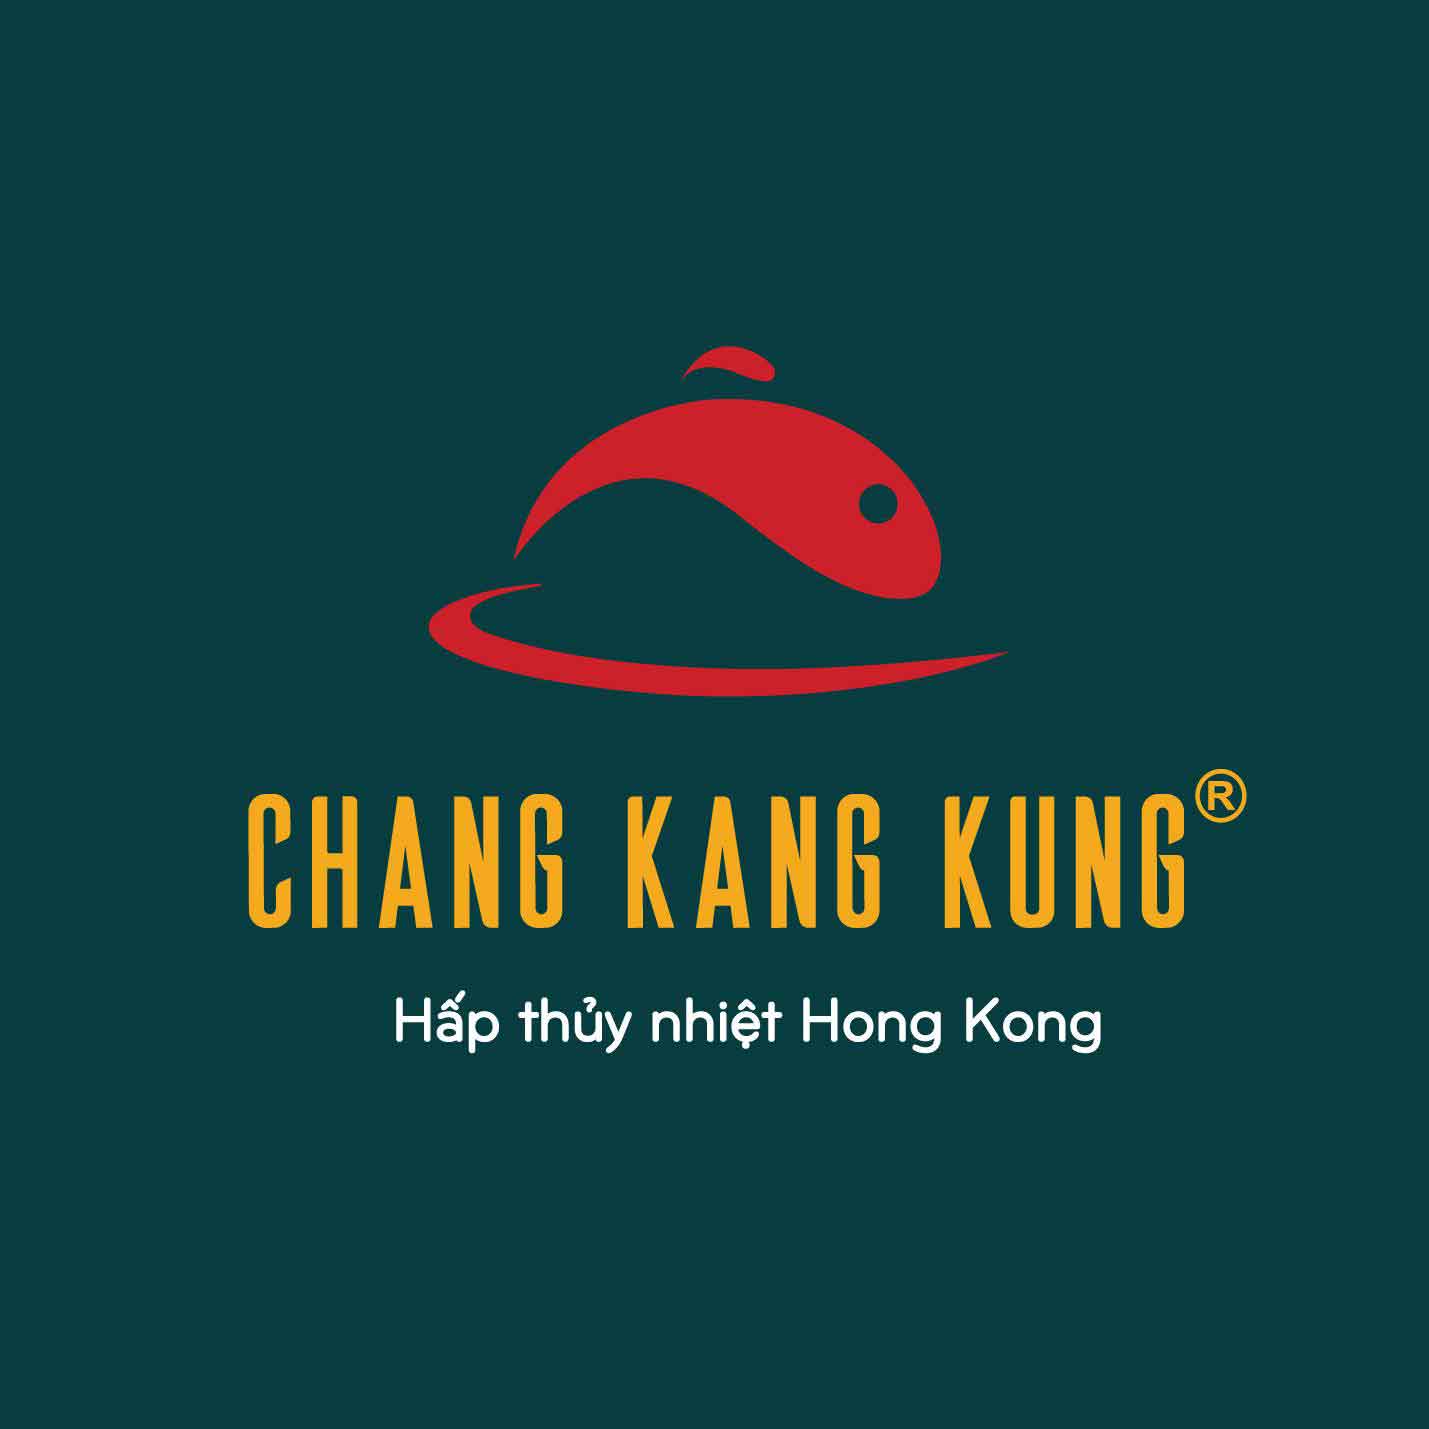 Chang Kang Kung